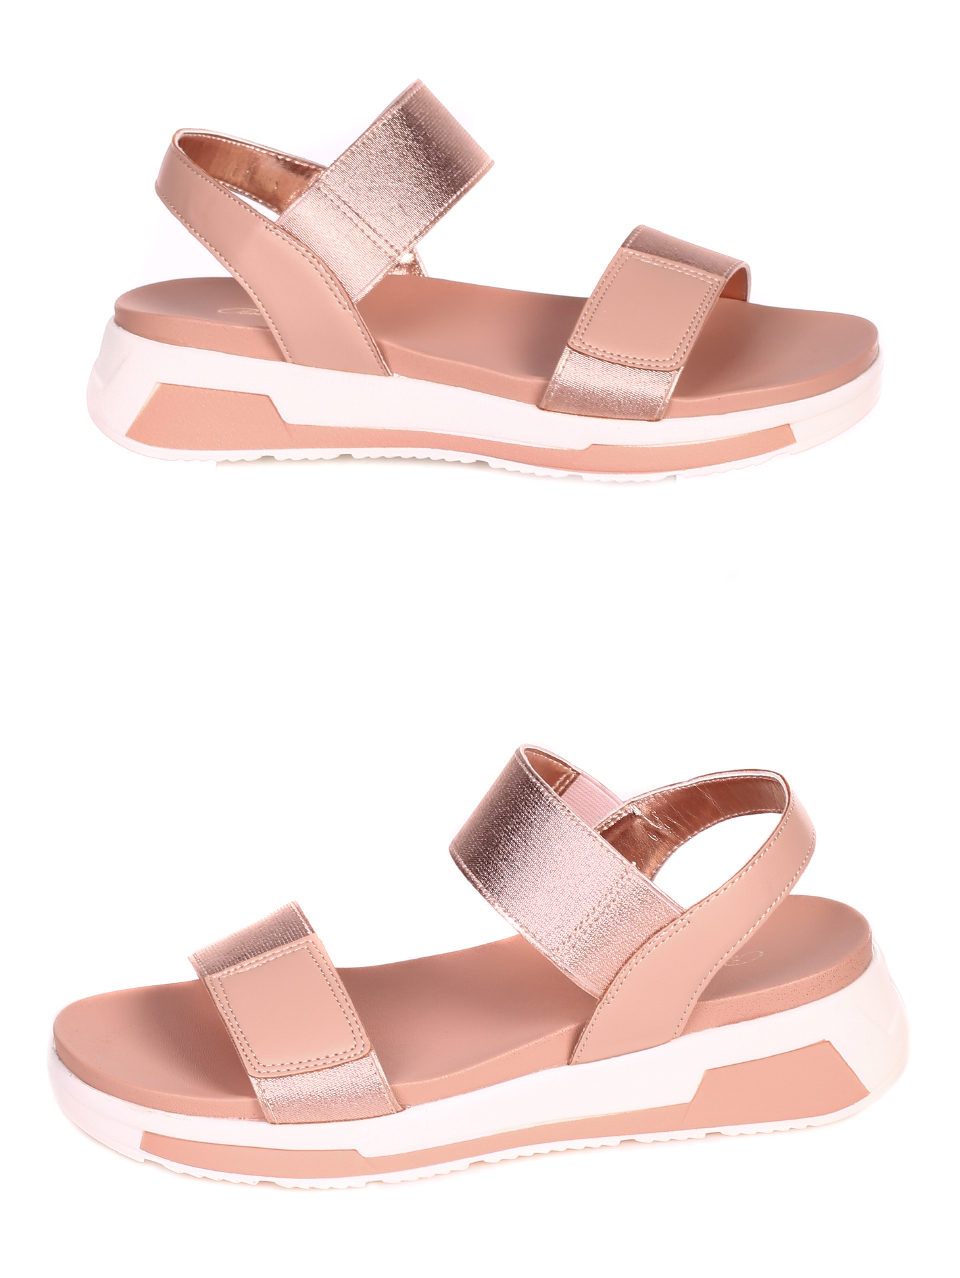 Ежедневни дамски сандали на платформа 4H-21252 pink